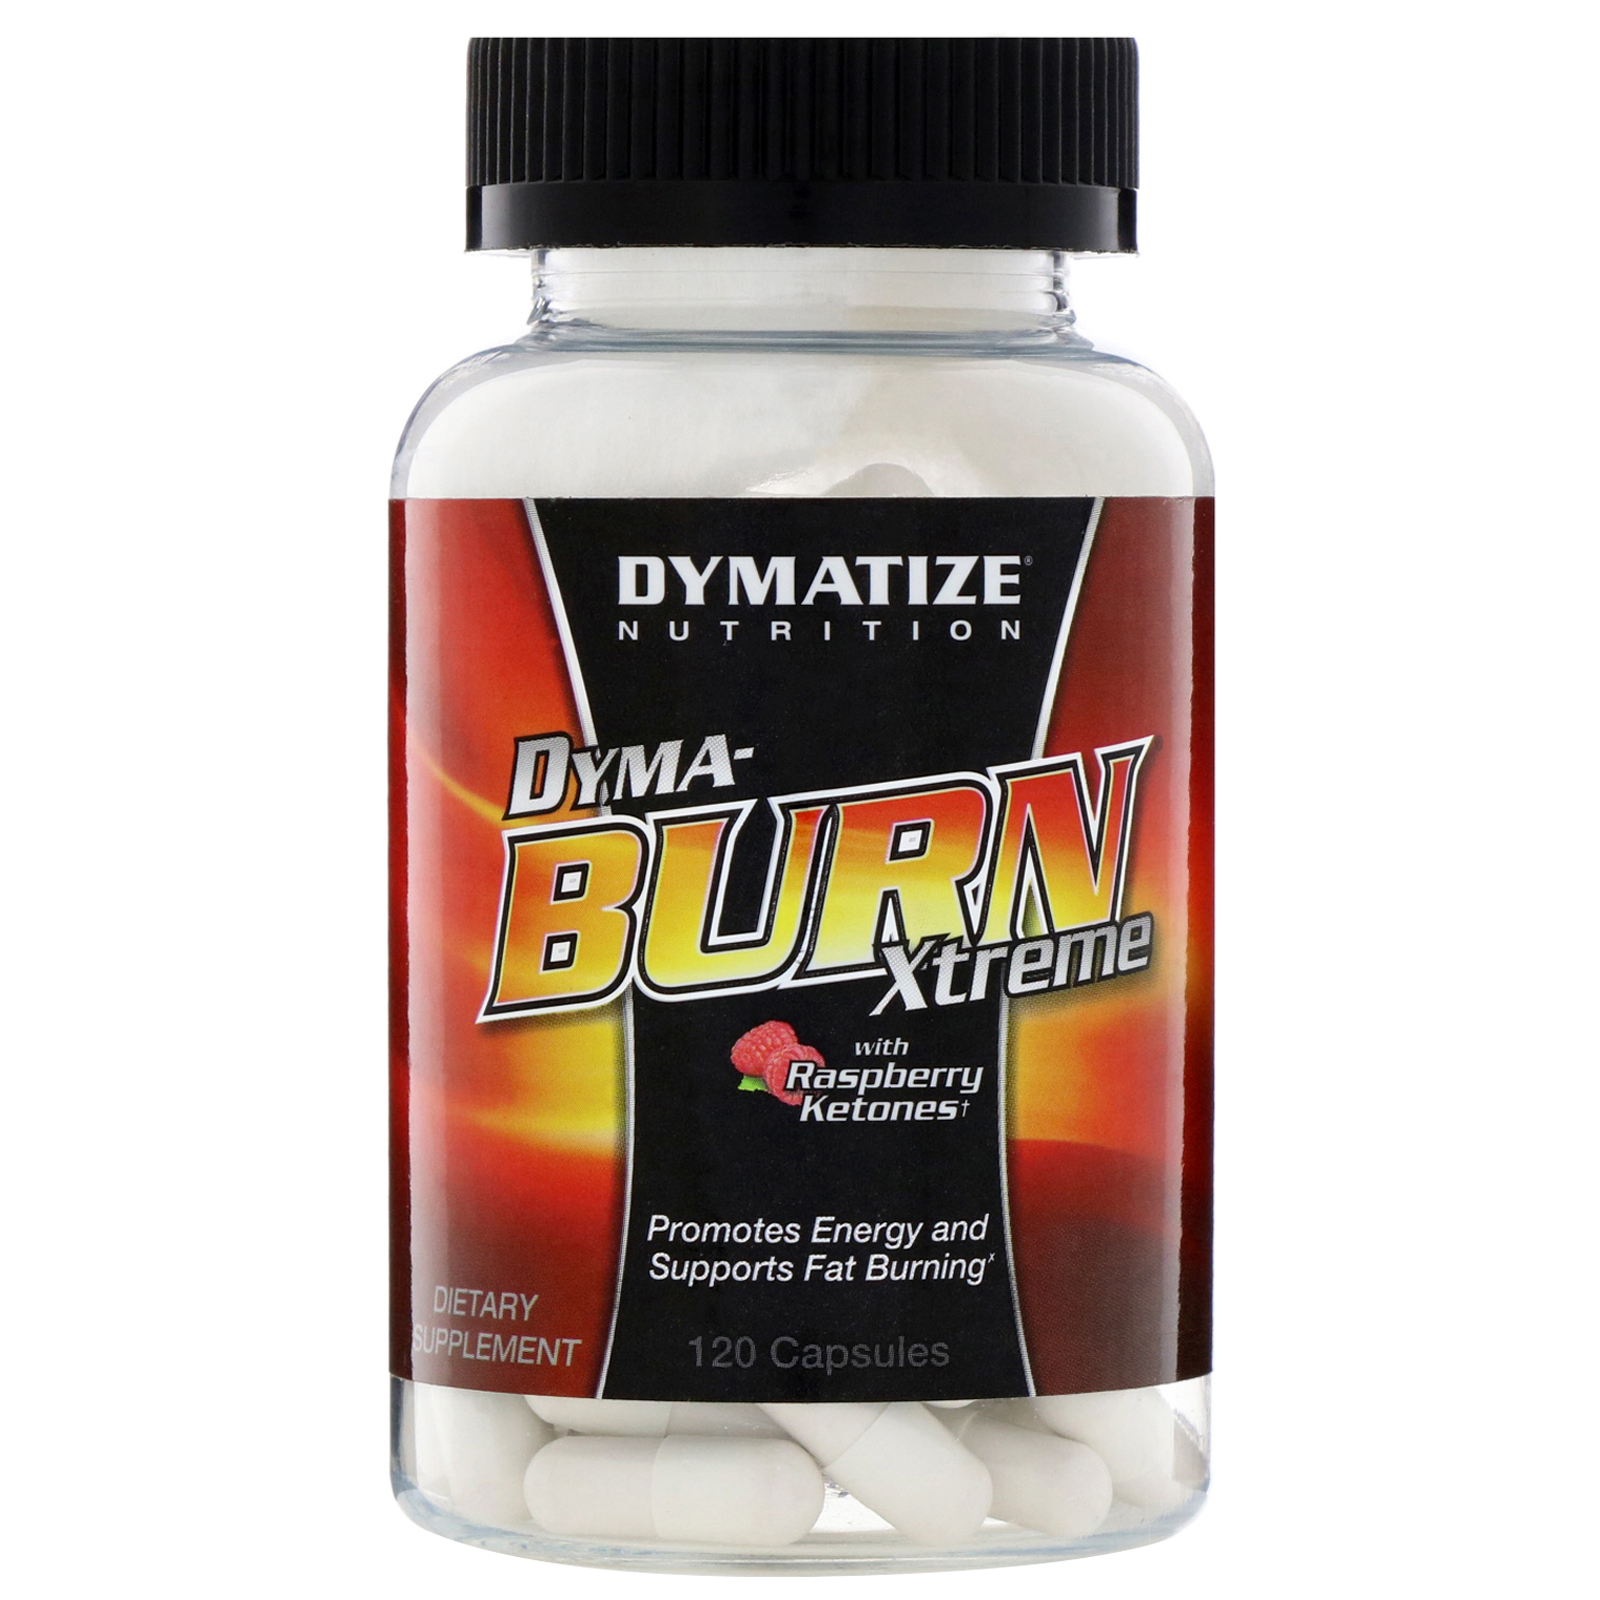 dymatize dyma burn xtreme fat review)